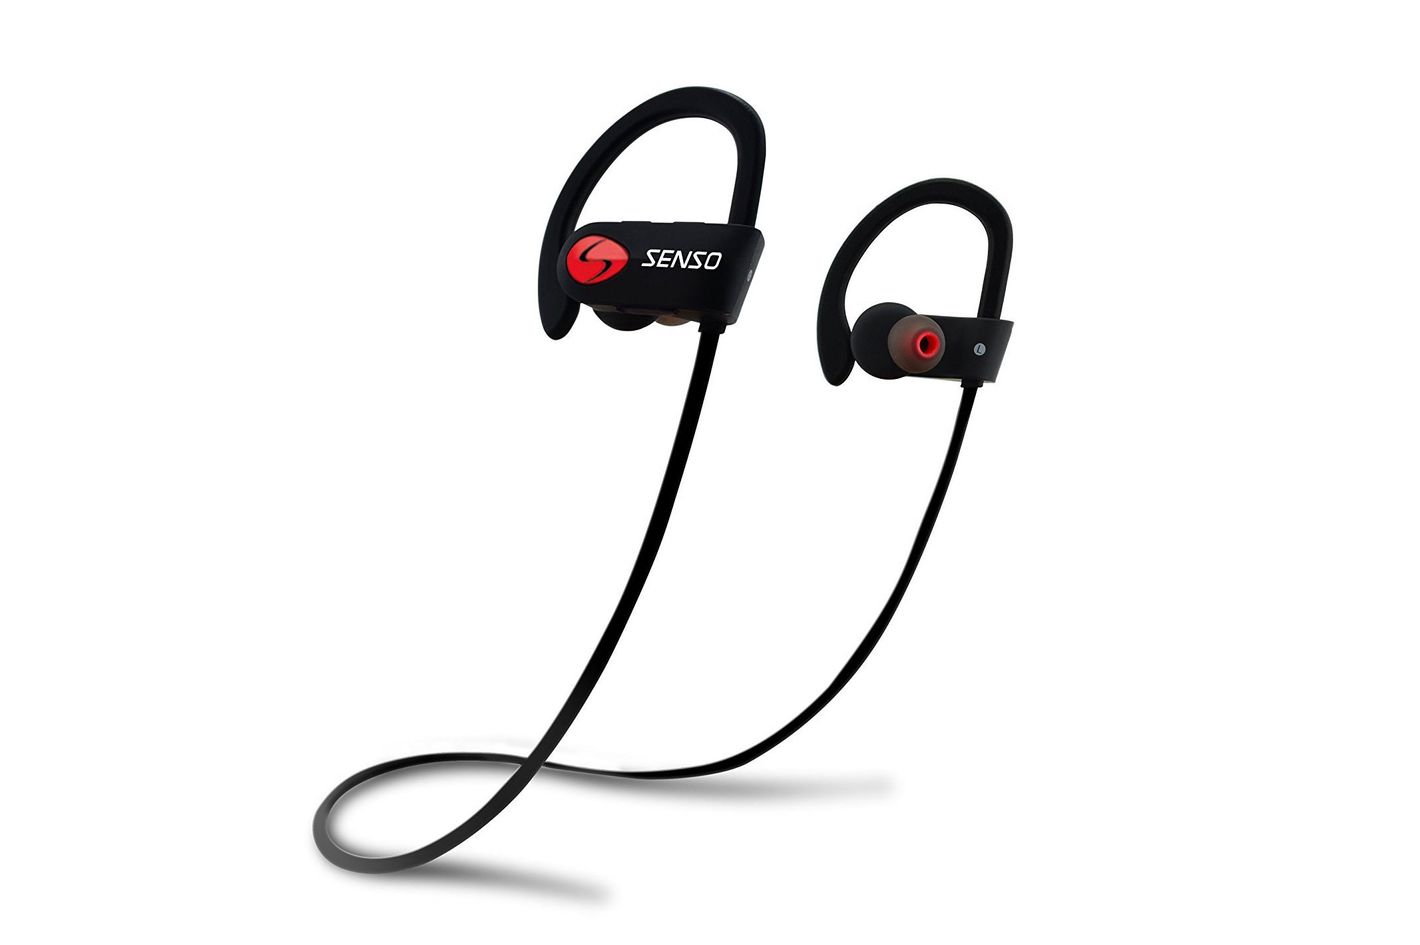 Top wireless earbuds sport